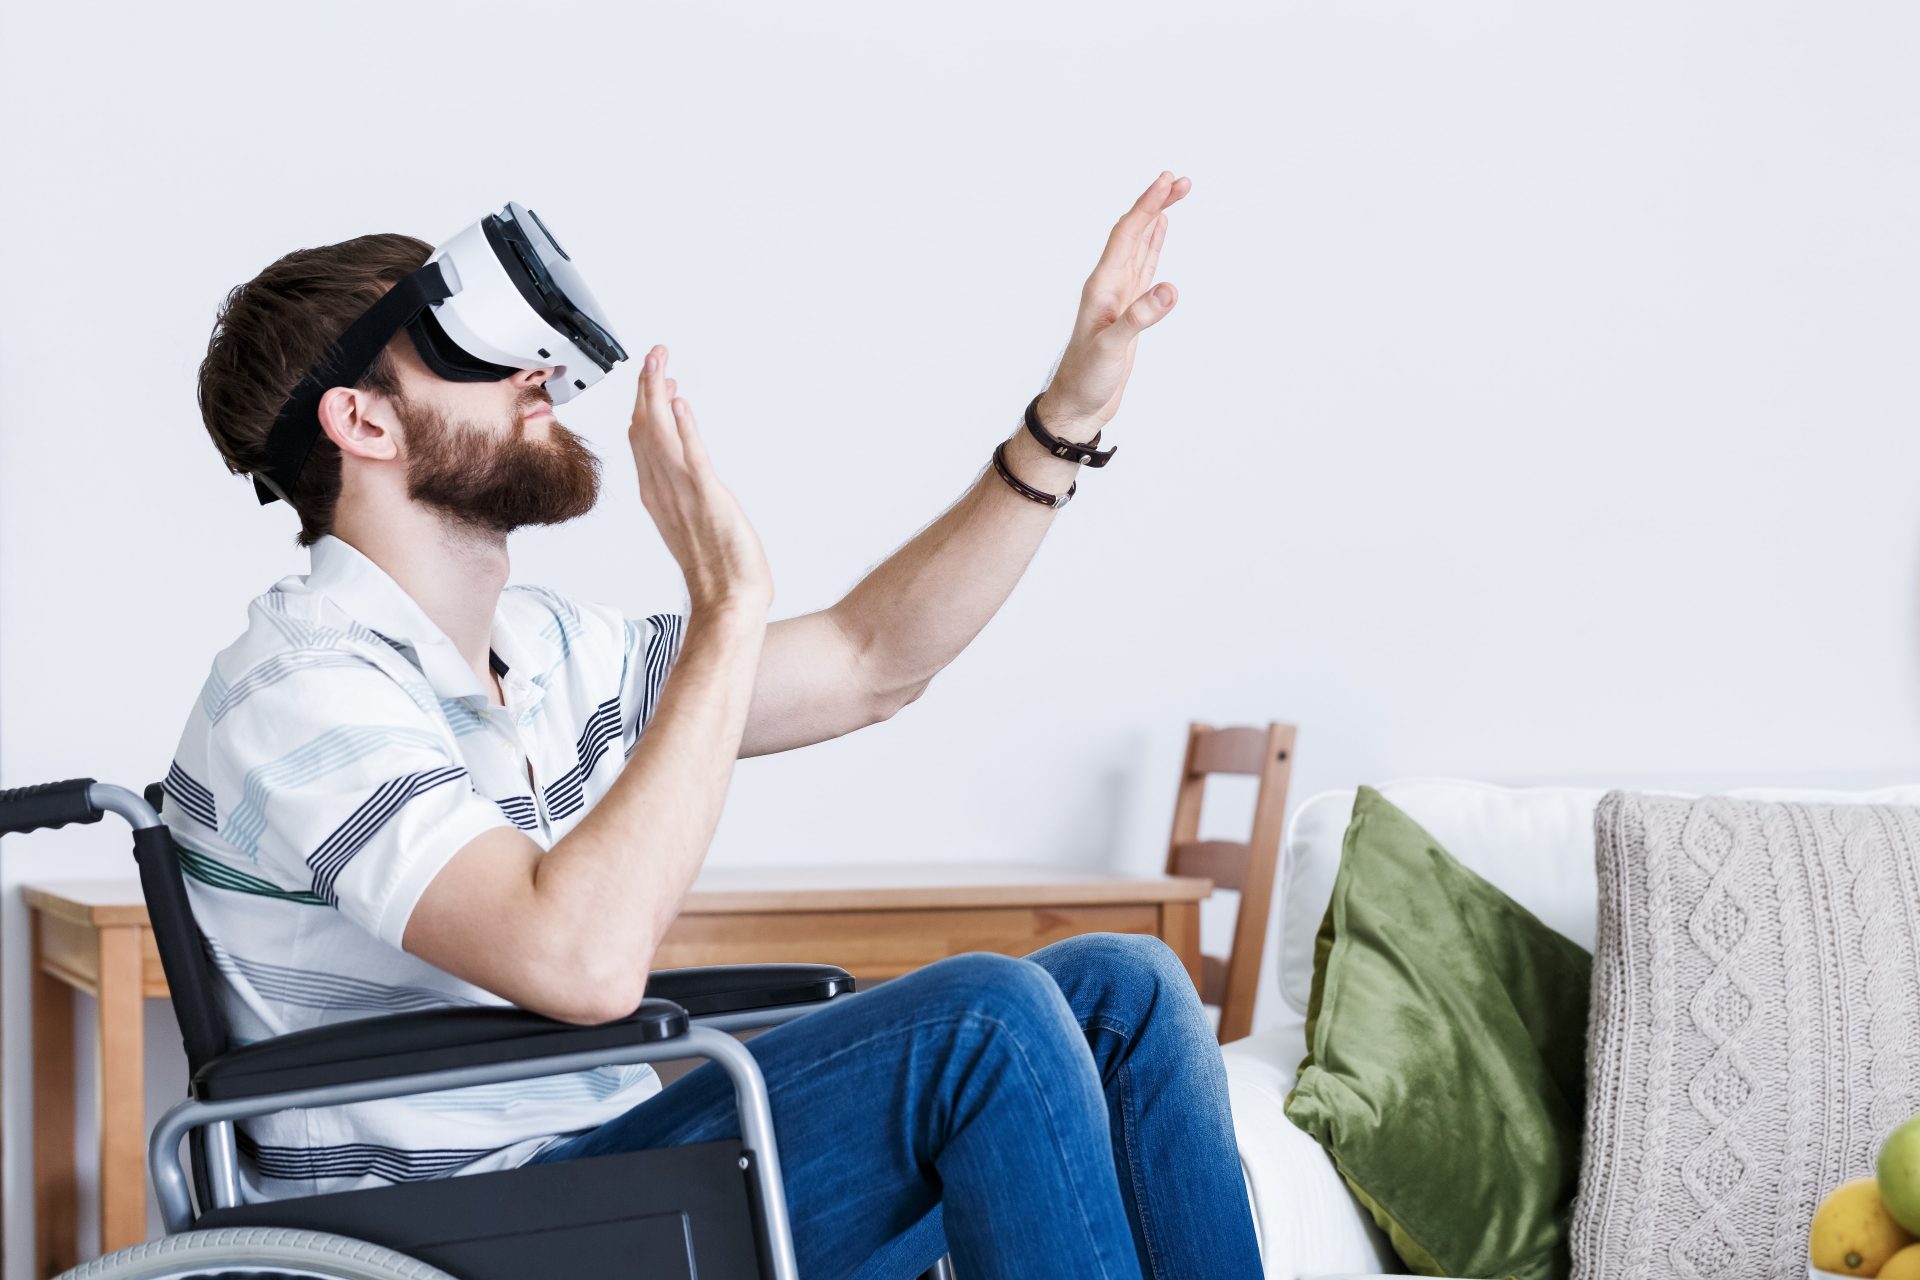 Treating Phobias Using VR